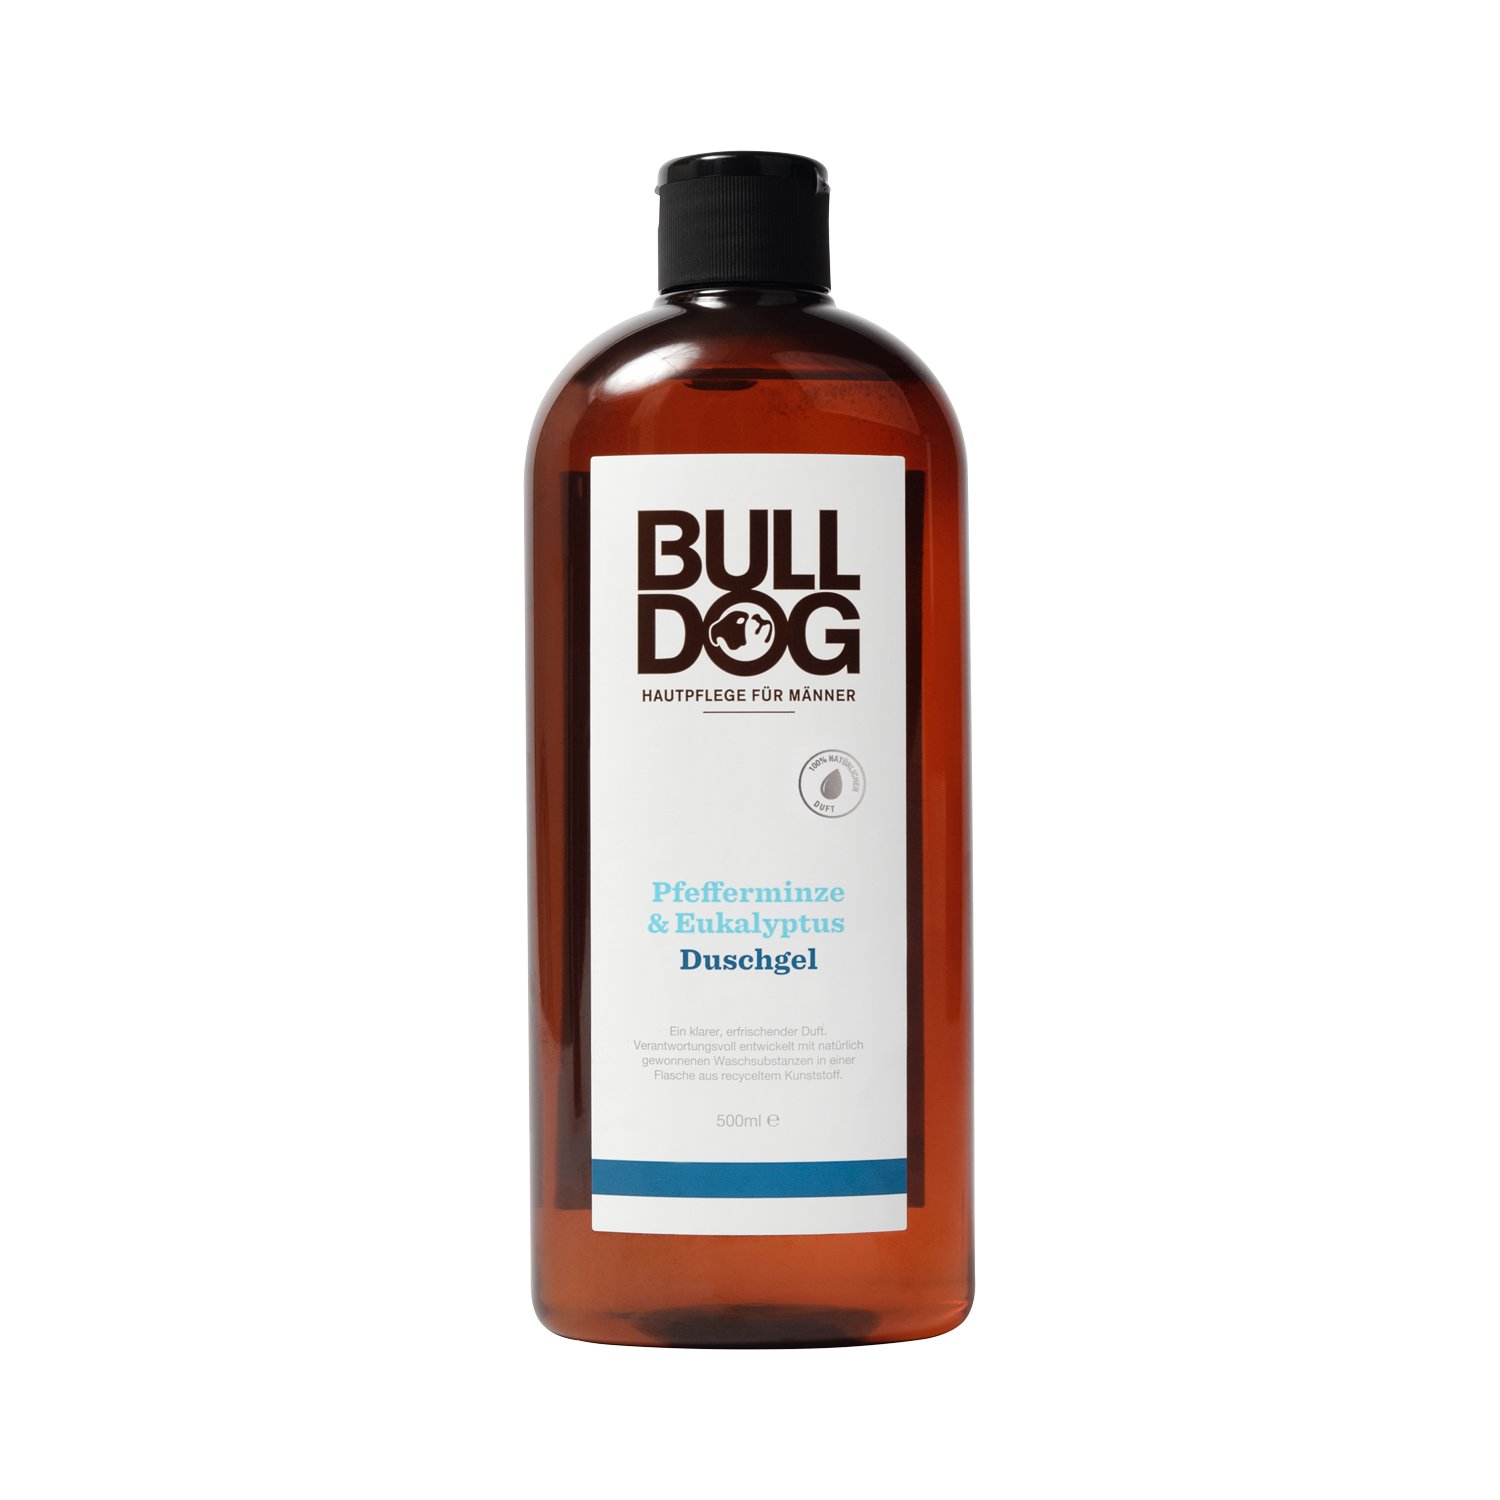 Bulldog - Pfefferminze & Eukalyptus Duschgel